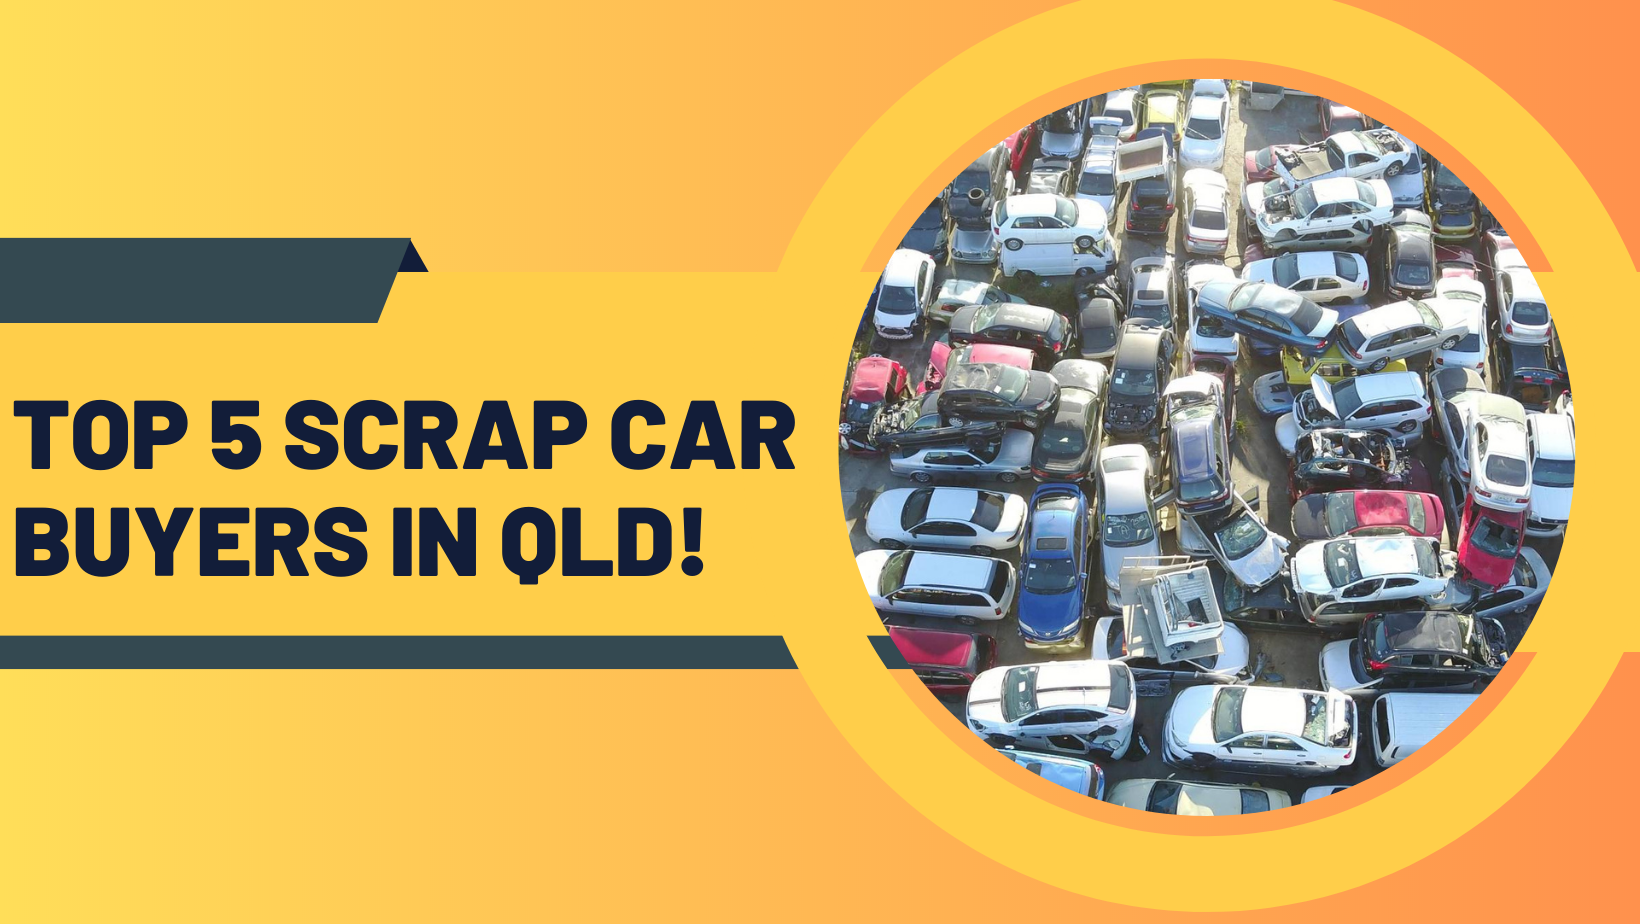 Top 5 Scrap Car buyers in QLD!